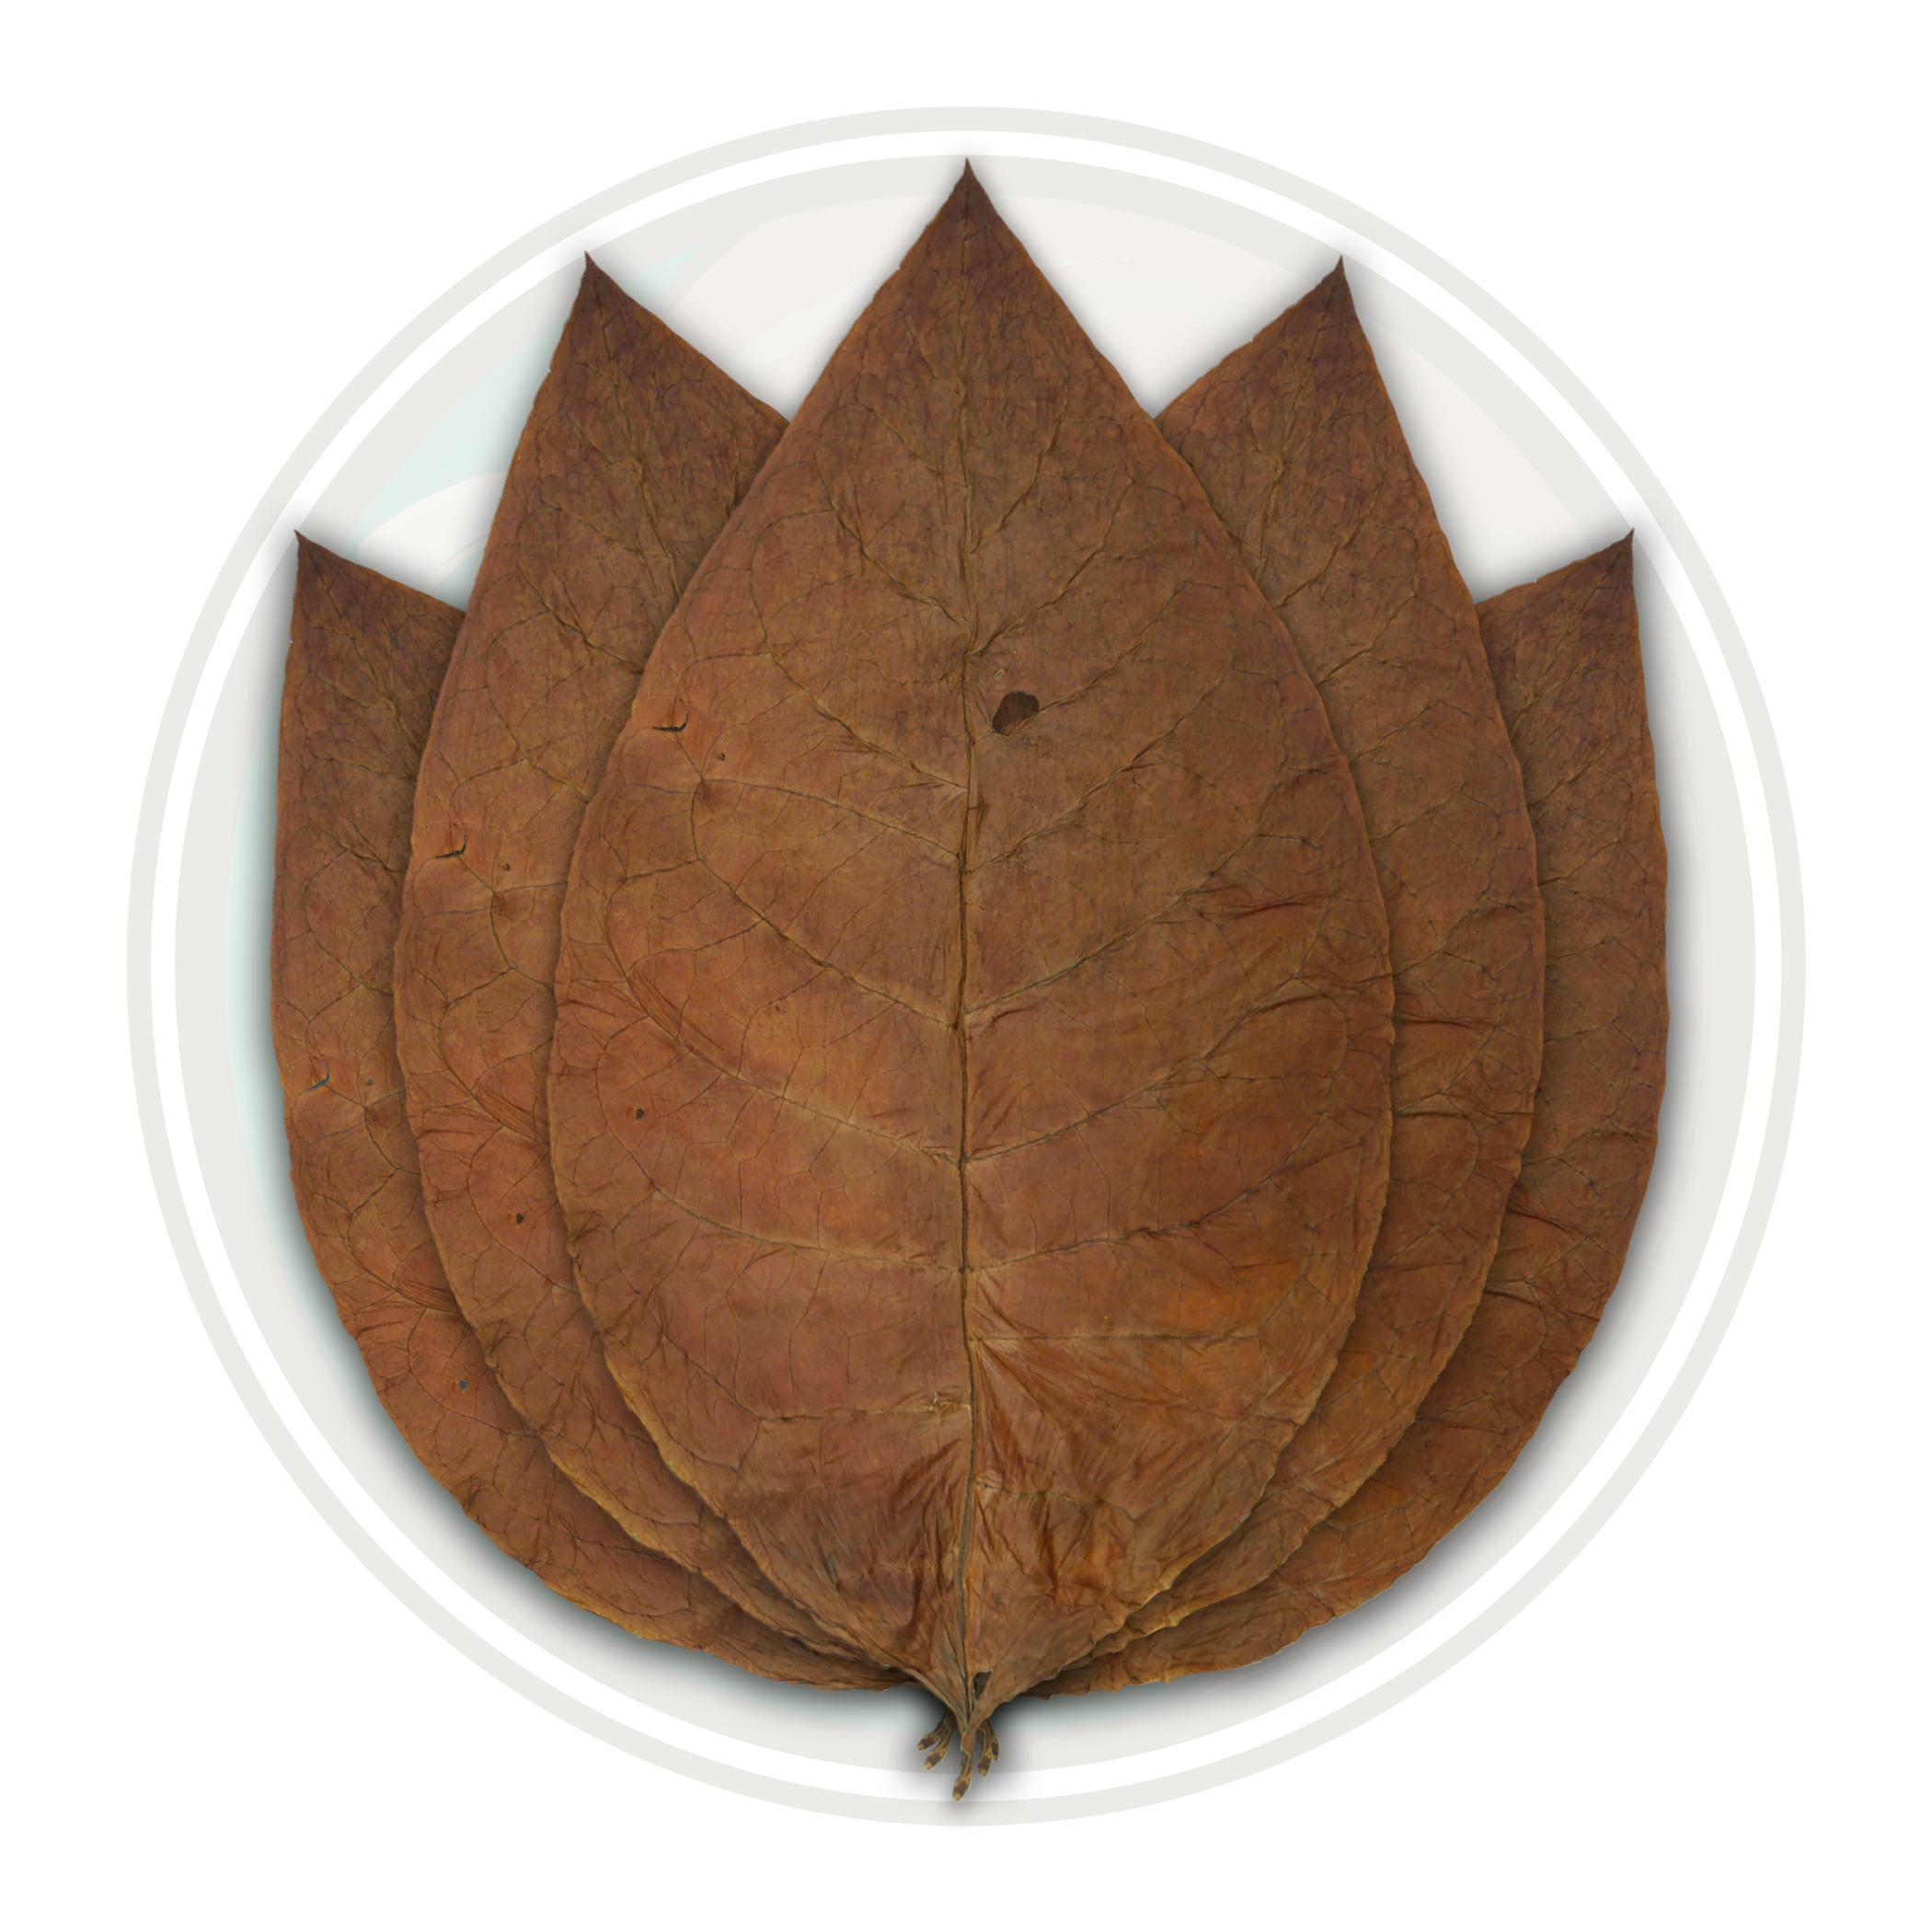 Ecuadorian Habano Seco Cigar Binder Tobacco Leaf Only